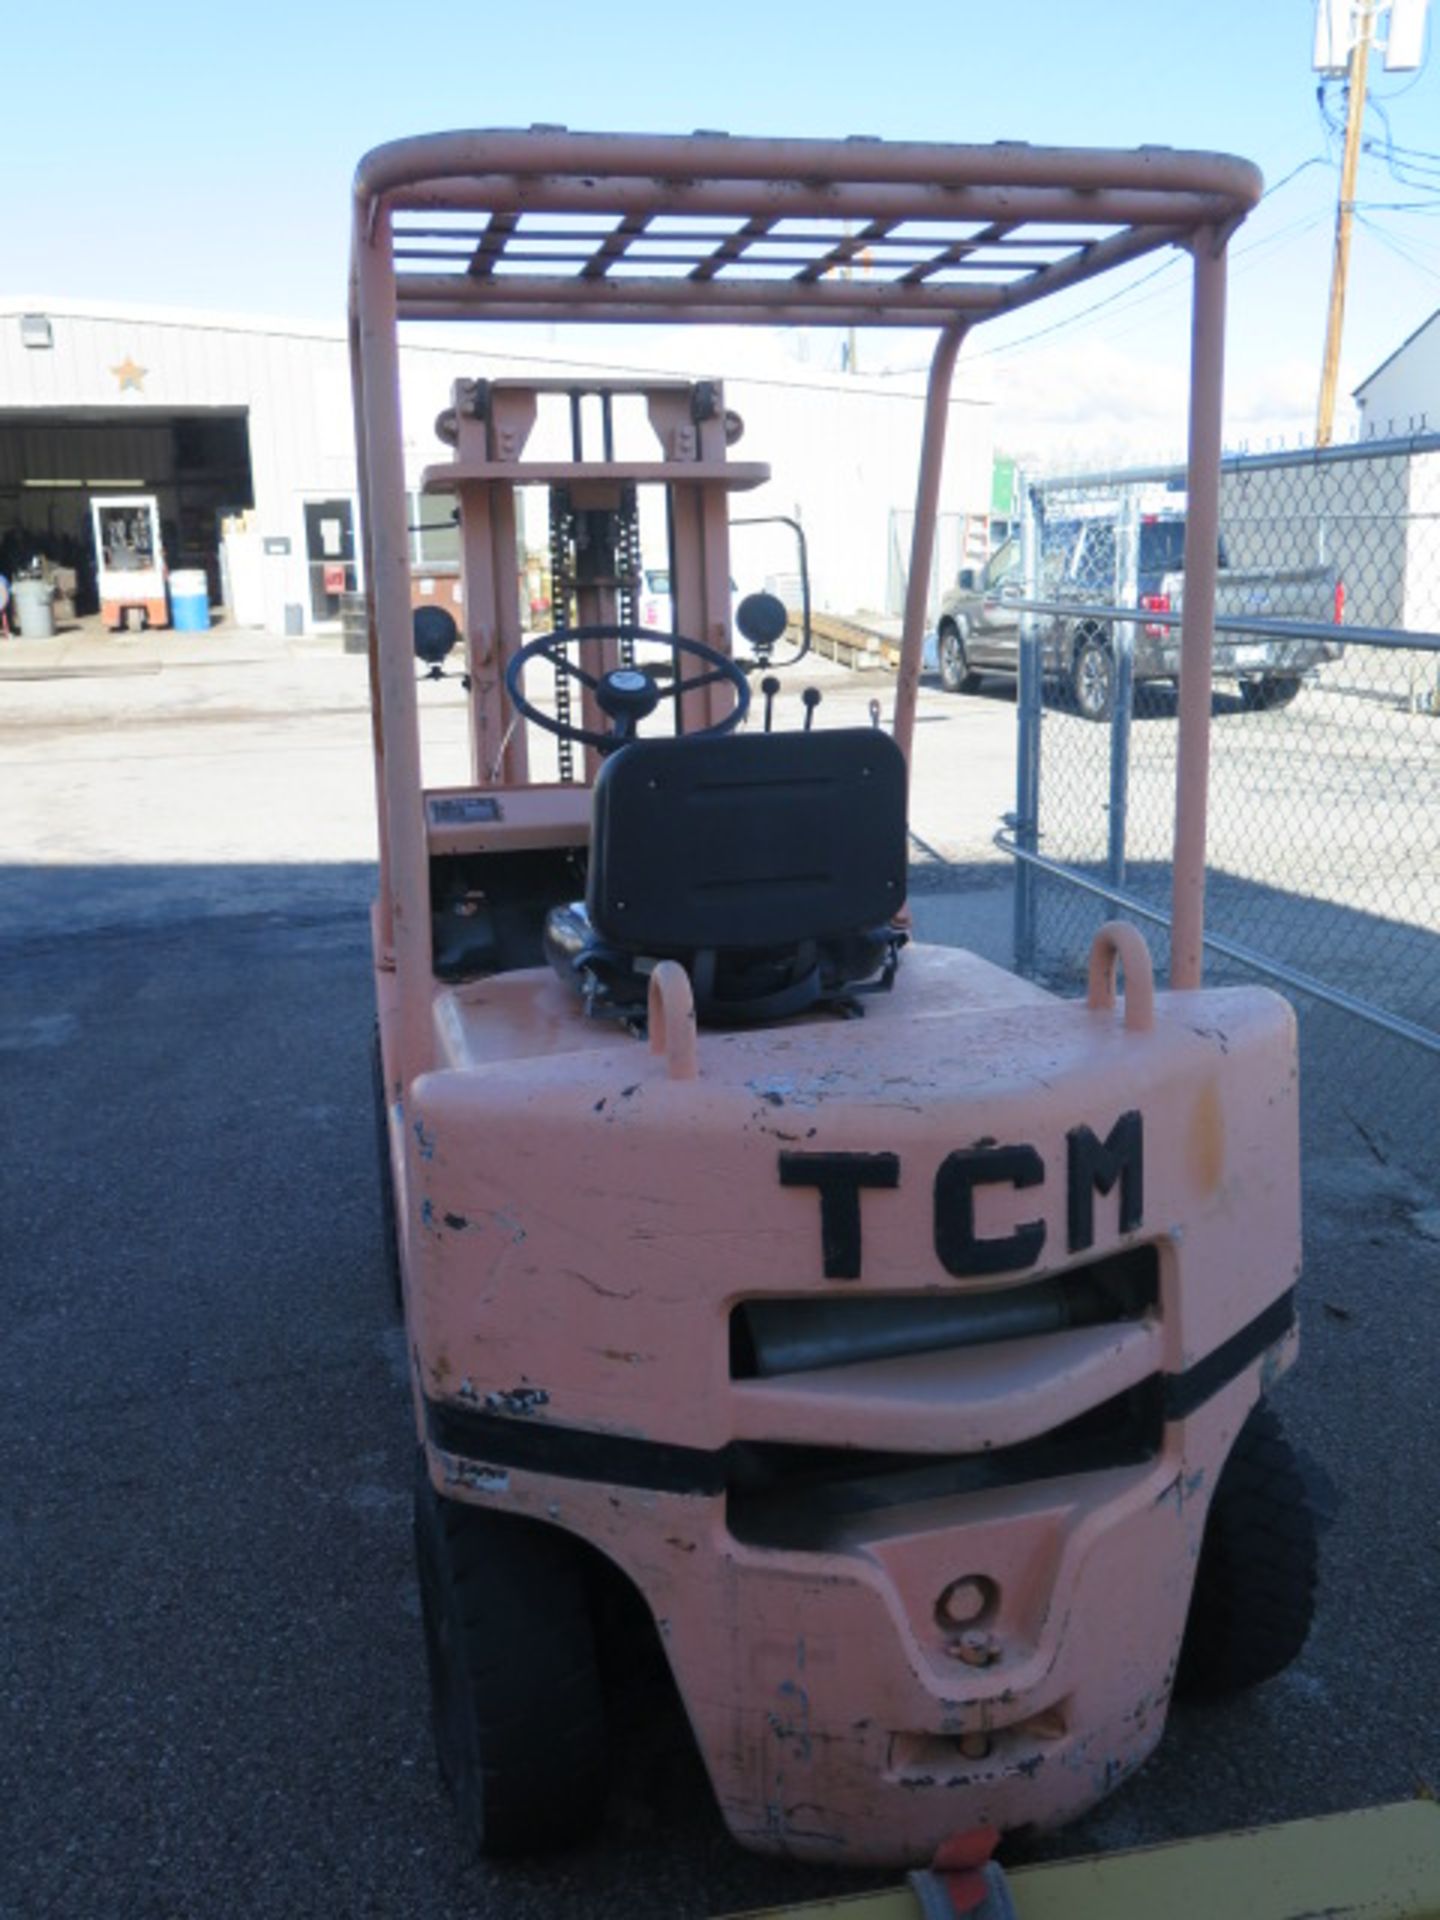 TCM mdl. FG20N6 1550kg (3417 Lb) Cap Gas Powered Forklift s/n 3456058 w/ 2-Stage Short Mast, - Image 3 of 7